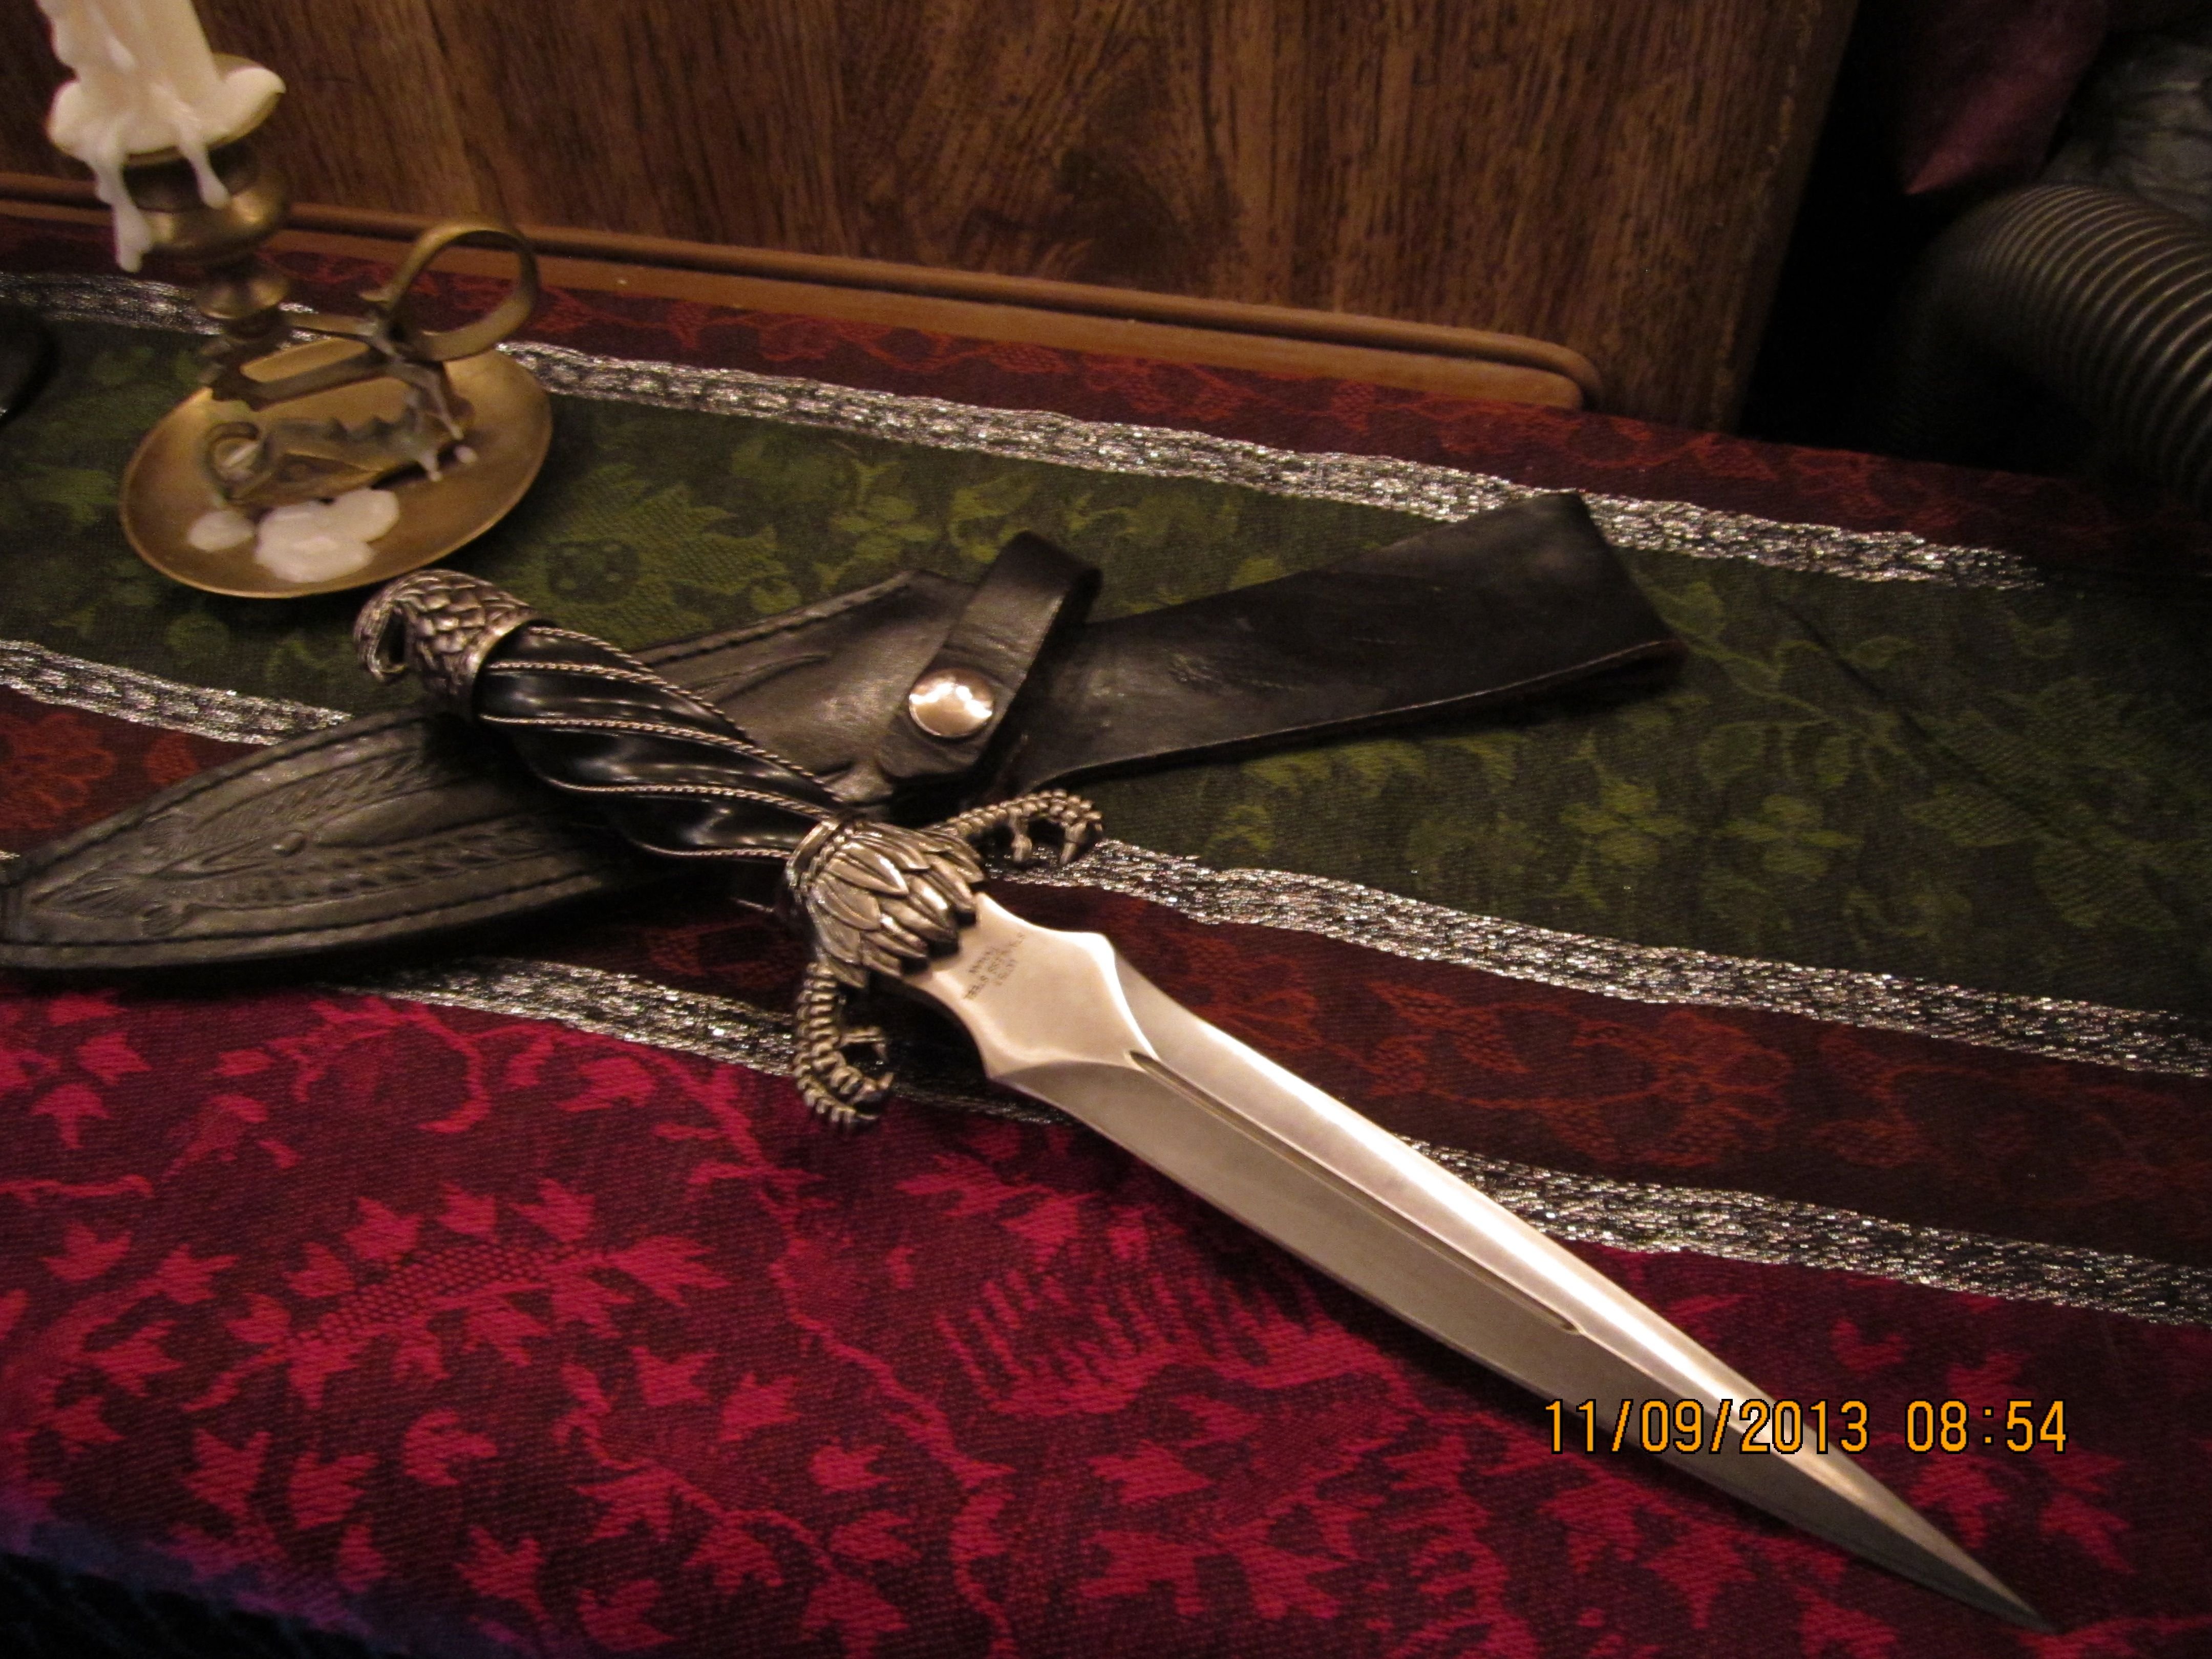 Свободы тайный карающий кинжал. Нож ведьмы Athame. Викканский ритуальный кинжал. Кинжал обоюдоострый Гольбейн. Атаме ритуальный нож.